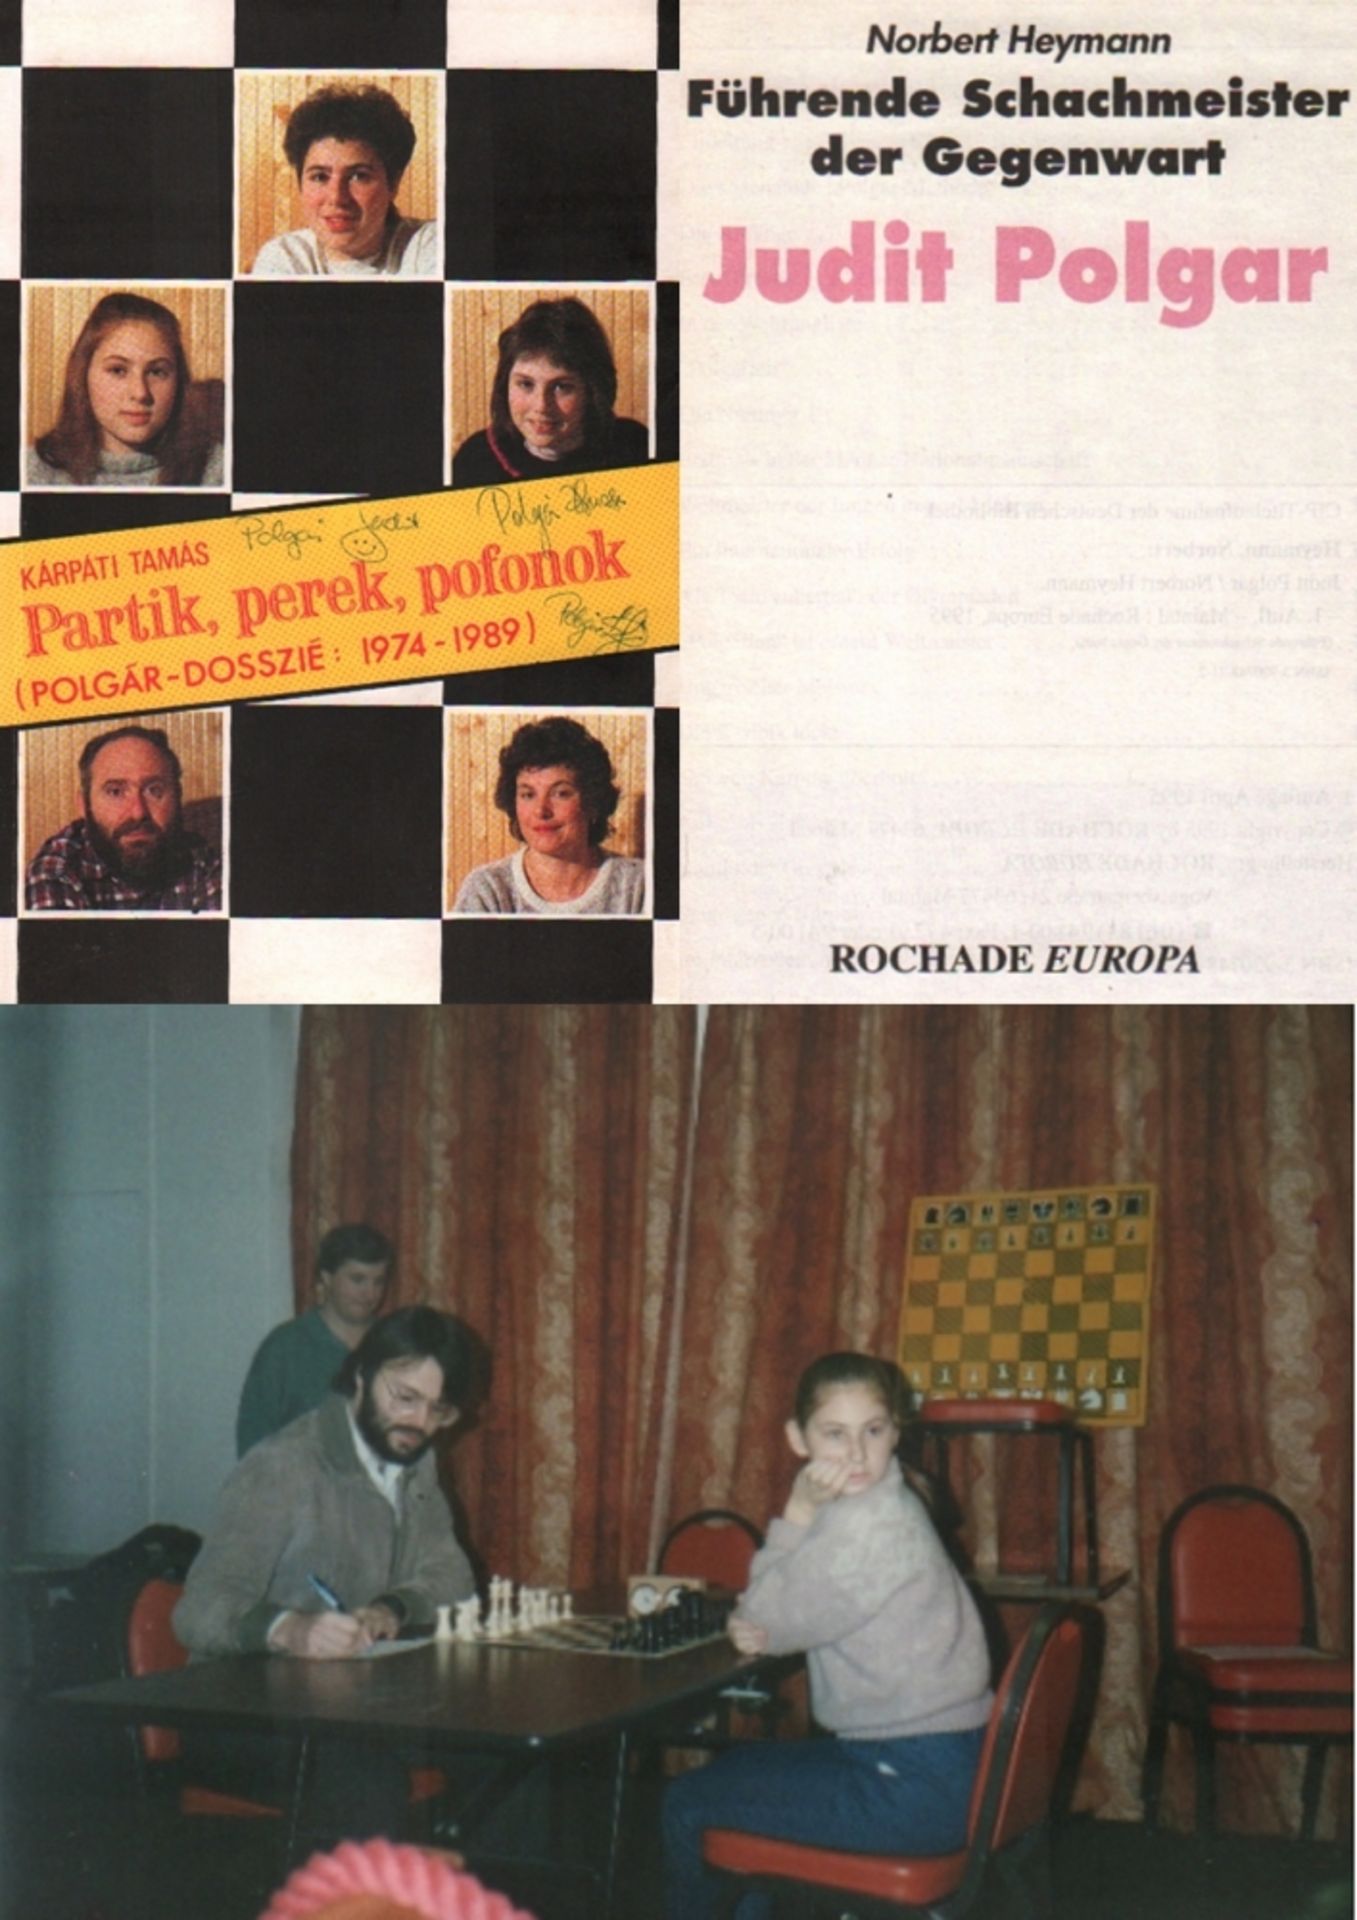 Polgár. Kárpáti, Tamás. Partik, perek, pofonok (Polgár - dosszié: 1974 - 1989). Budapest, Magyar